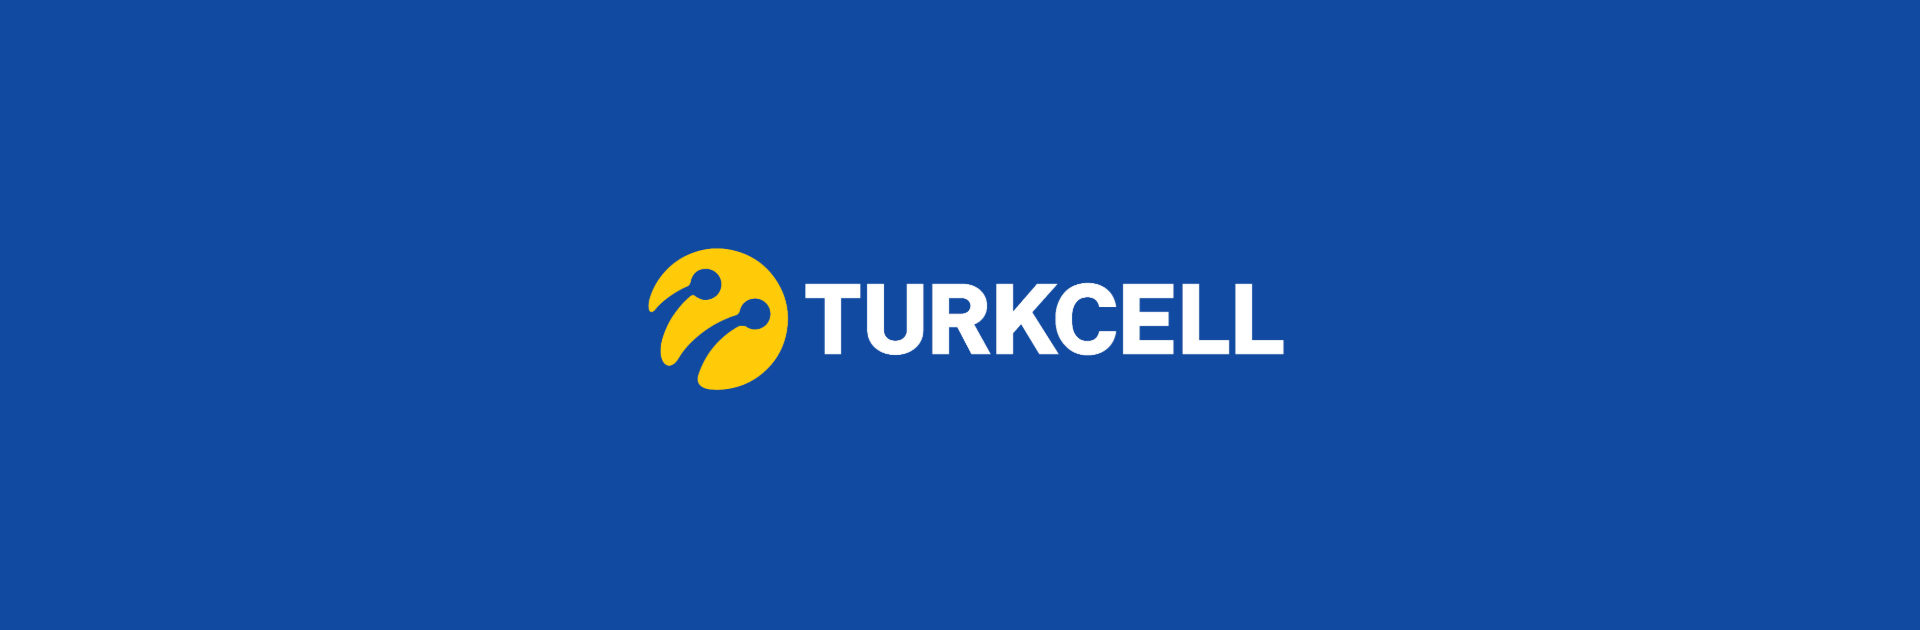 Turkcell Omni-Channel Müşteri Deneyiminde Mükemmelliği SAP ile sağlıyor